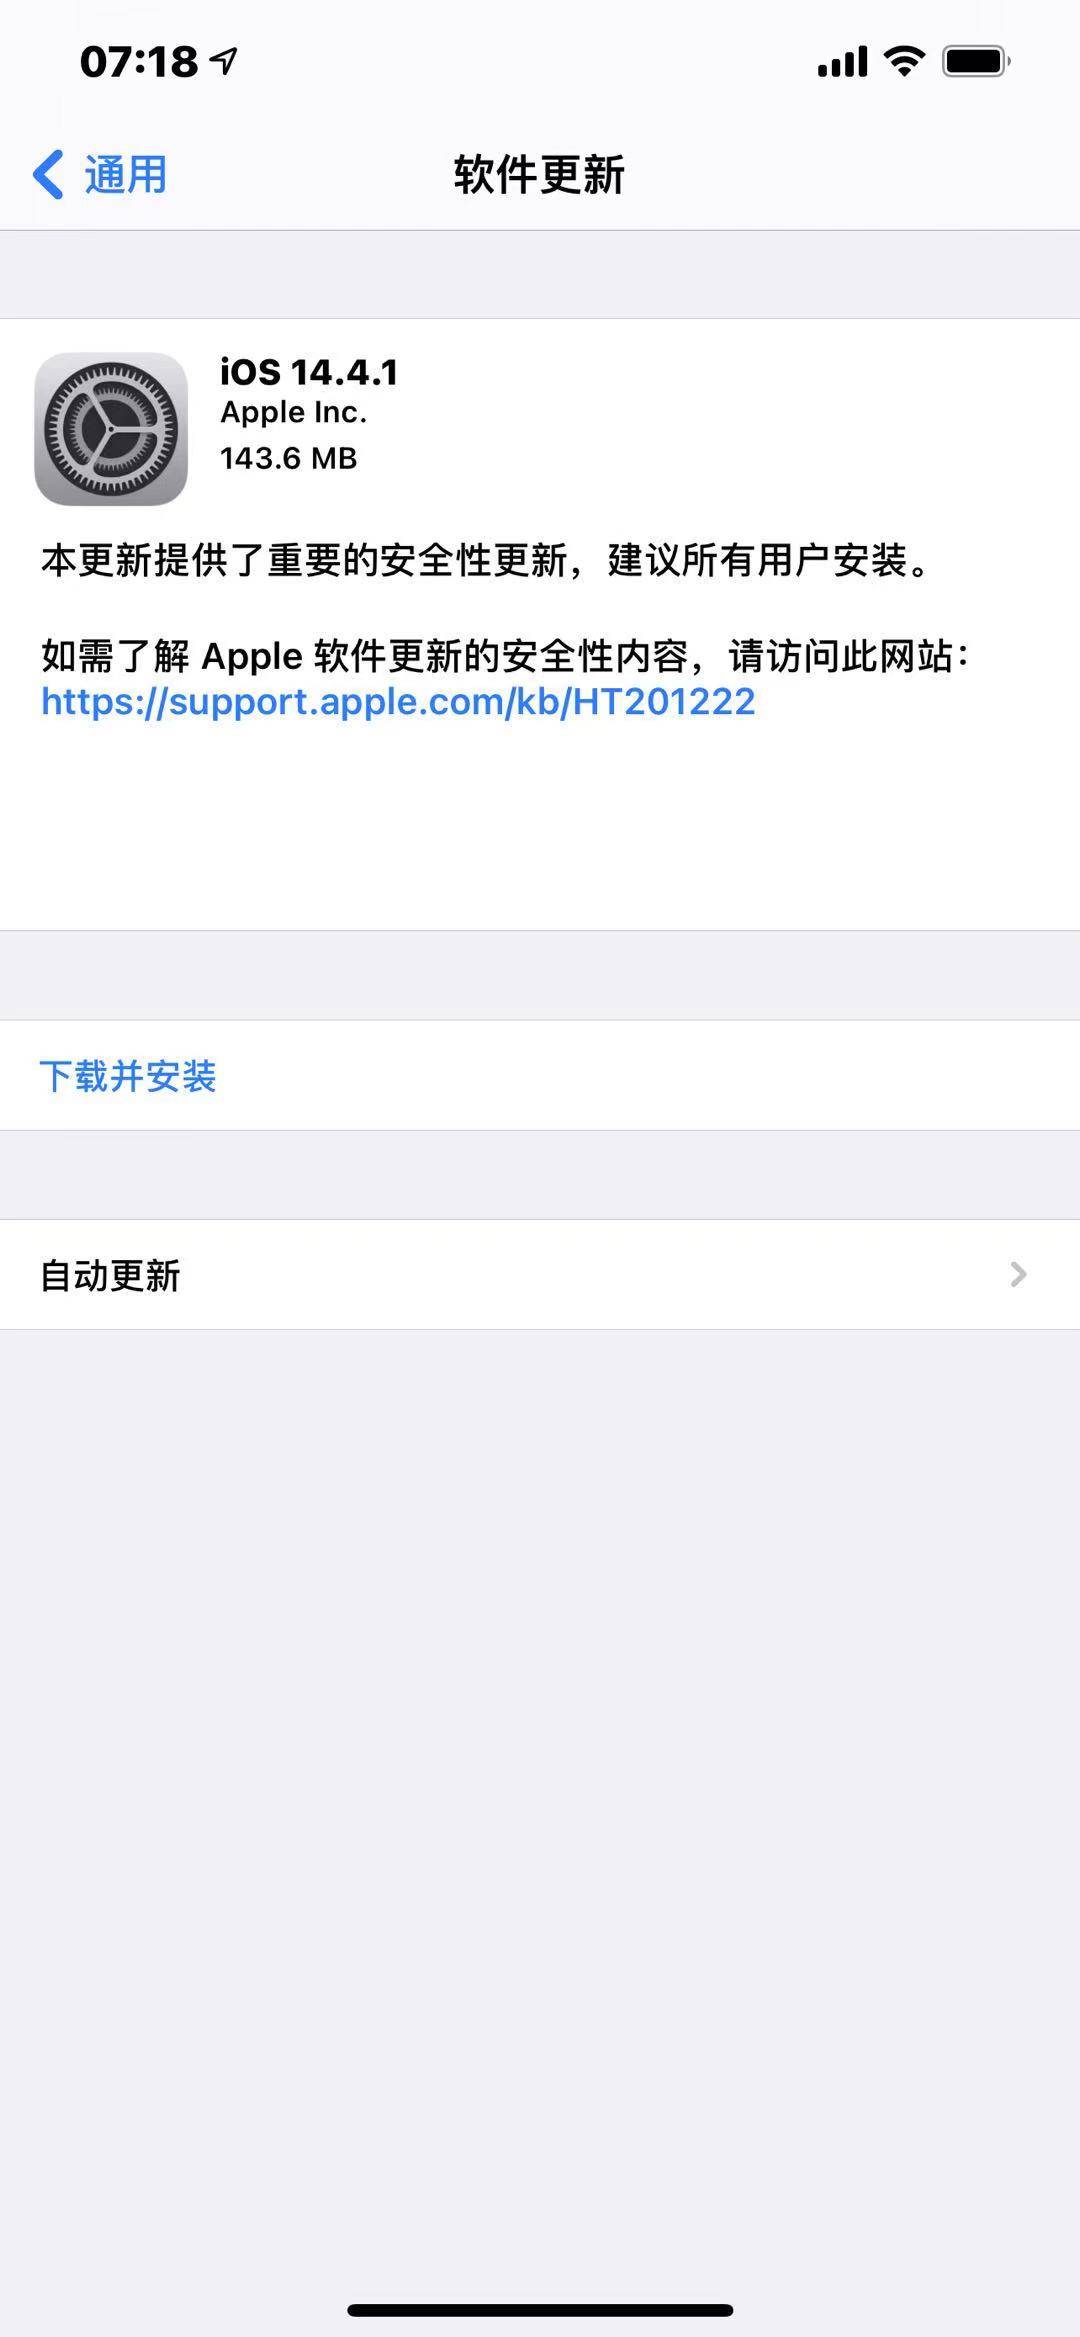 Sur|苹果发布iOS 14.4.1/macOS 11.2.3/watchOS 7.3.2更新